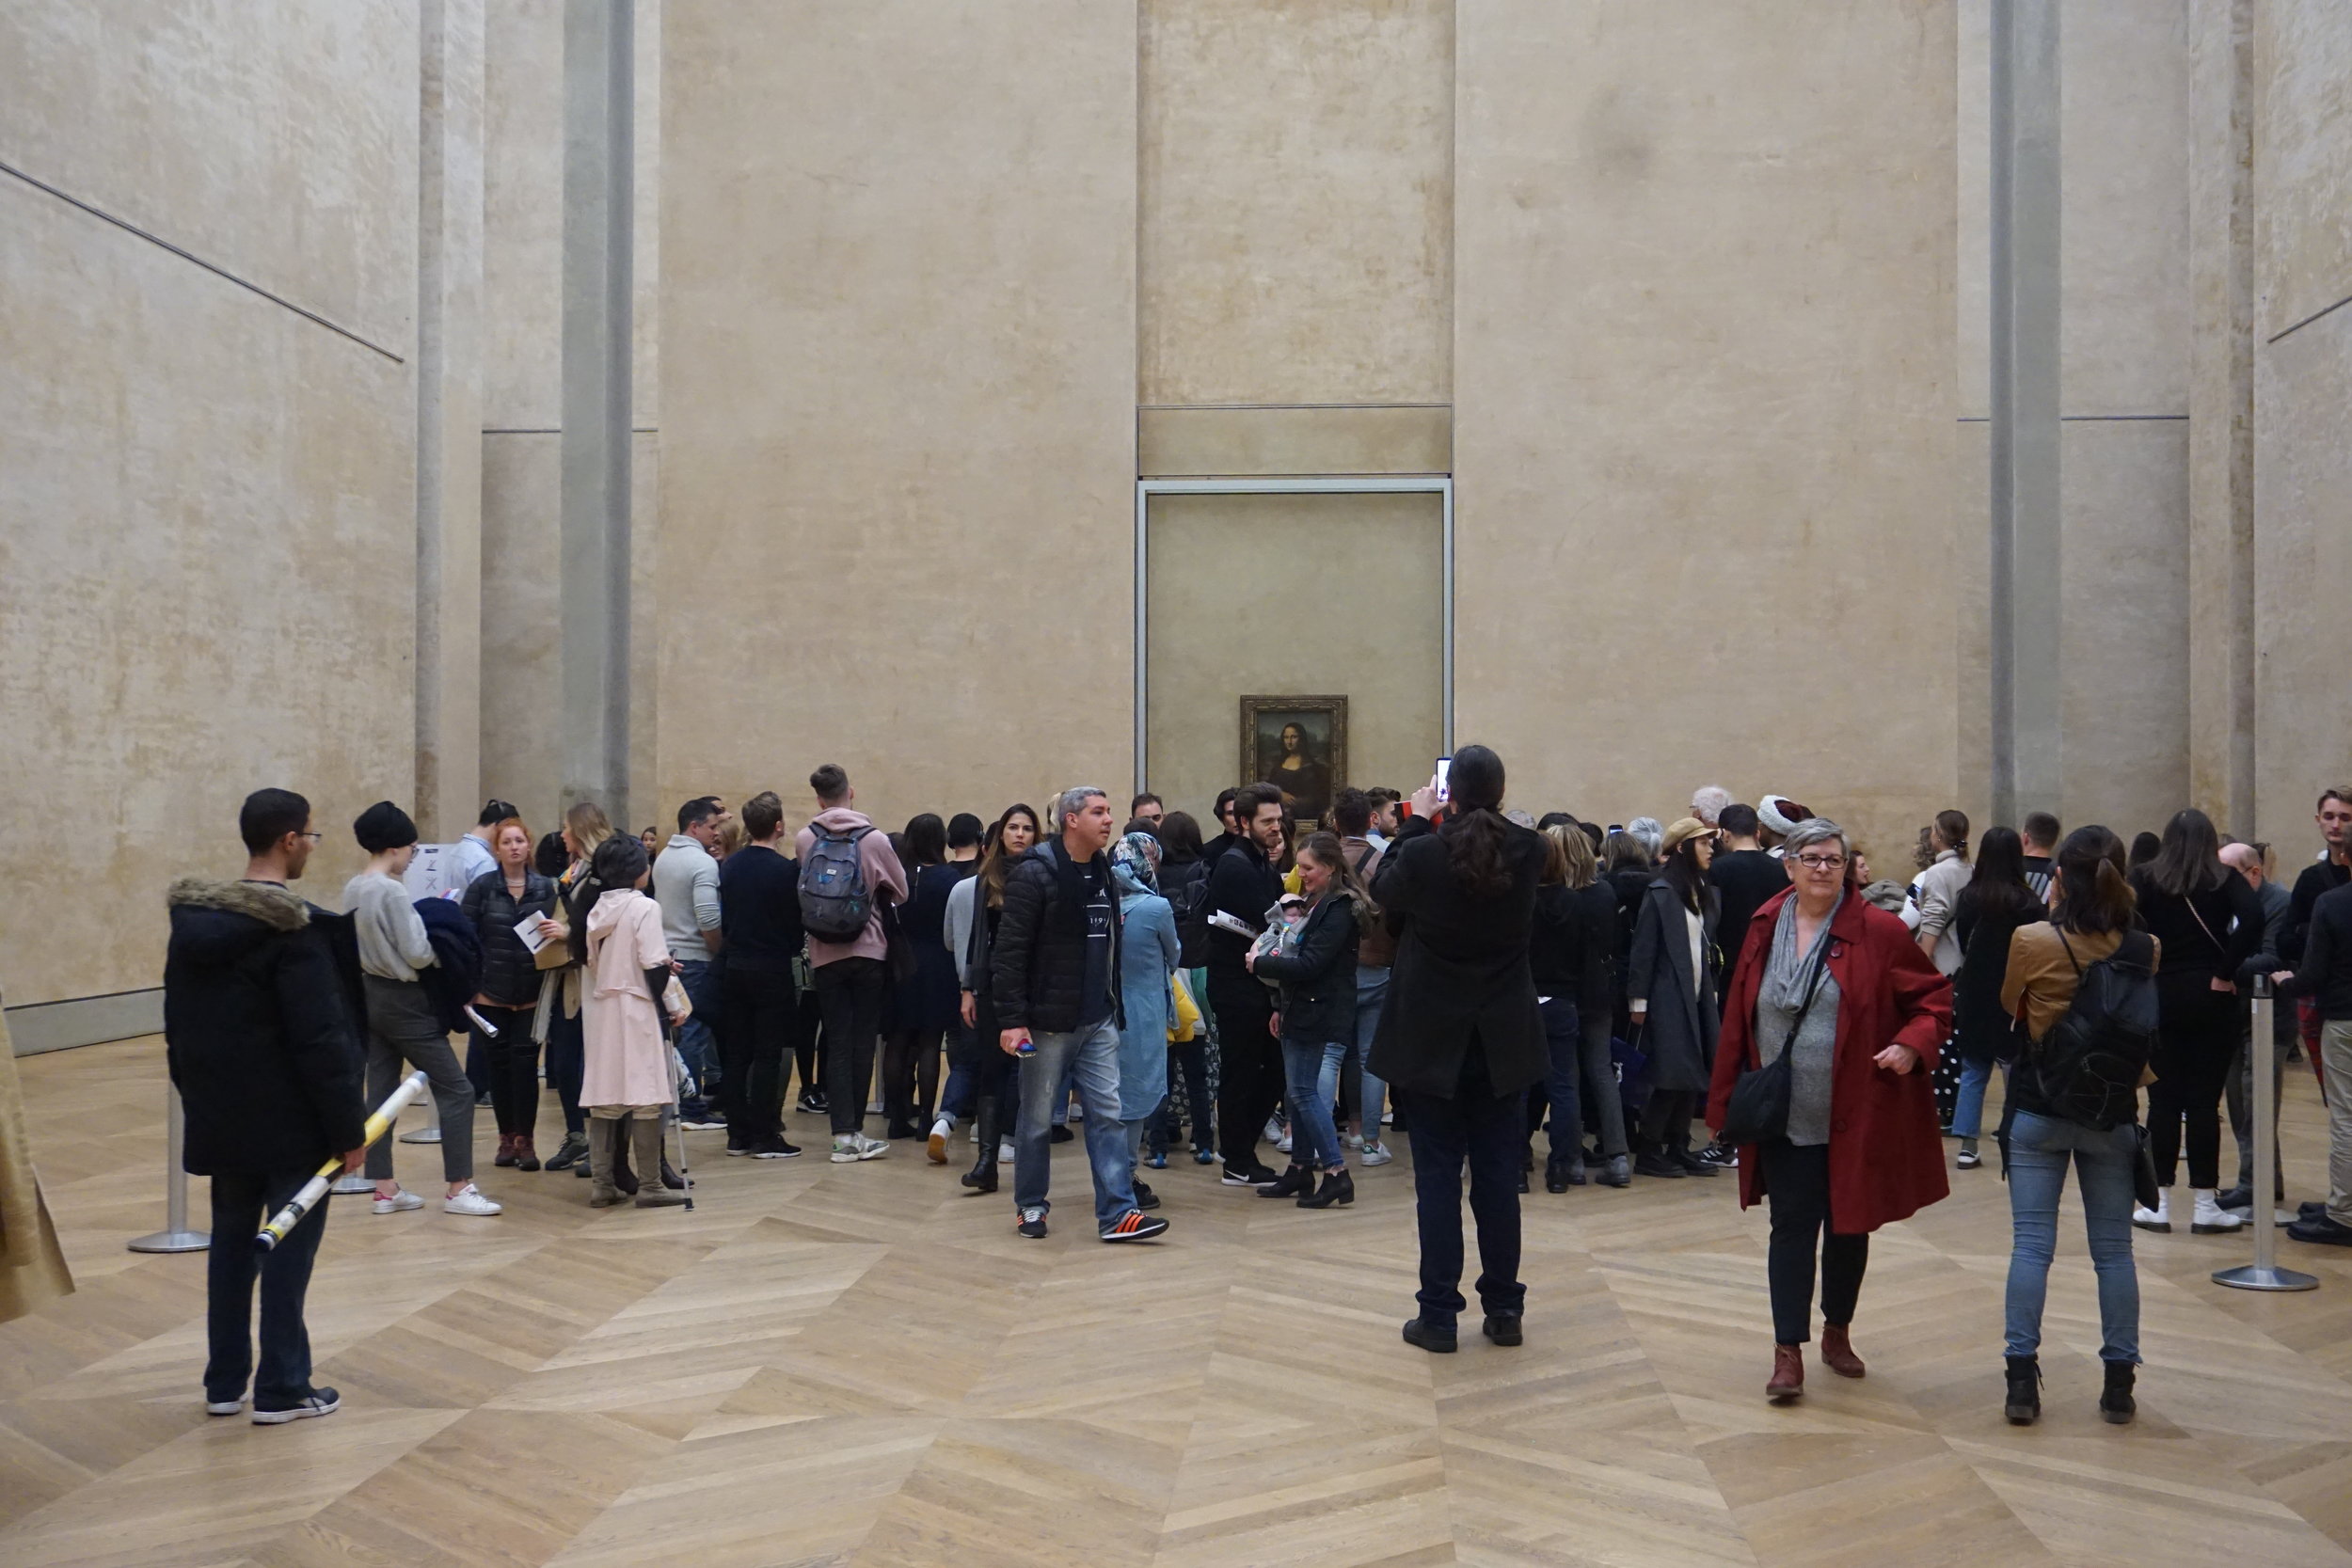  Mona always draws a crowd. 